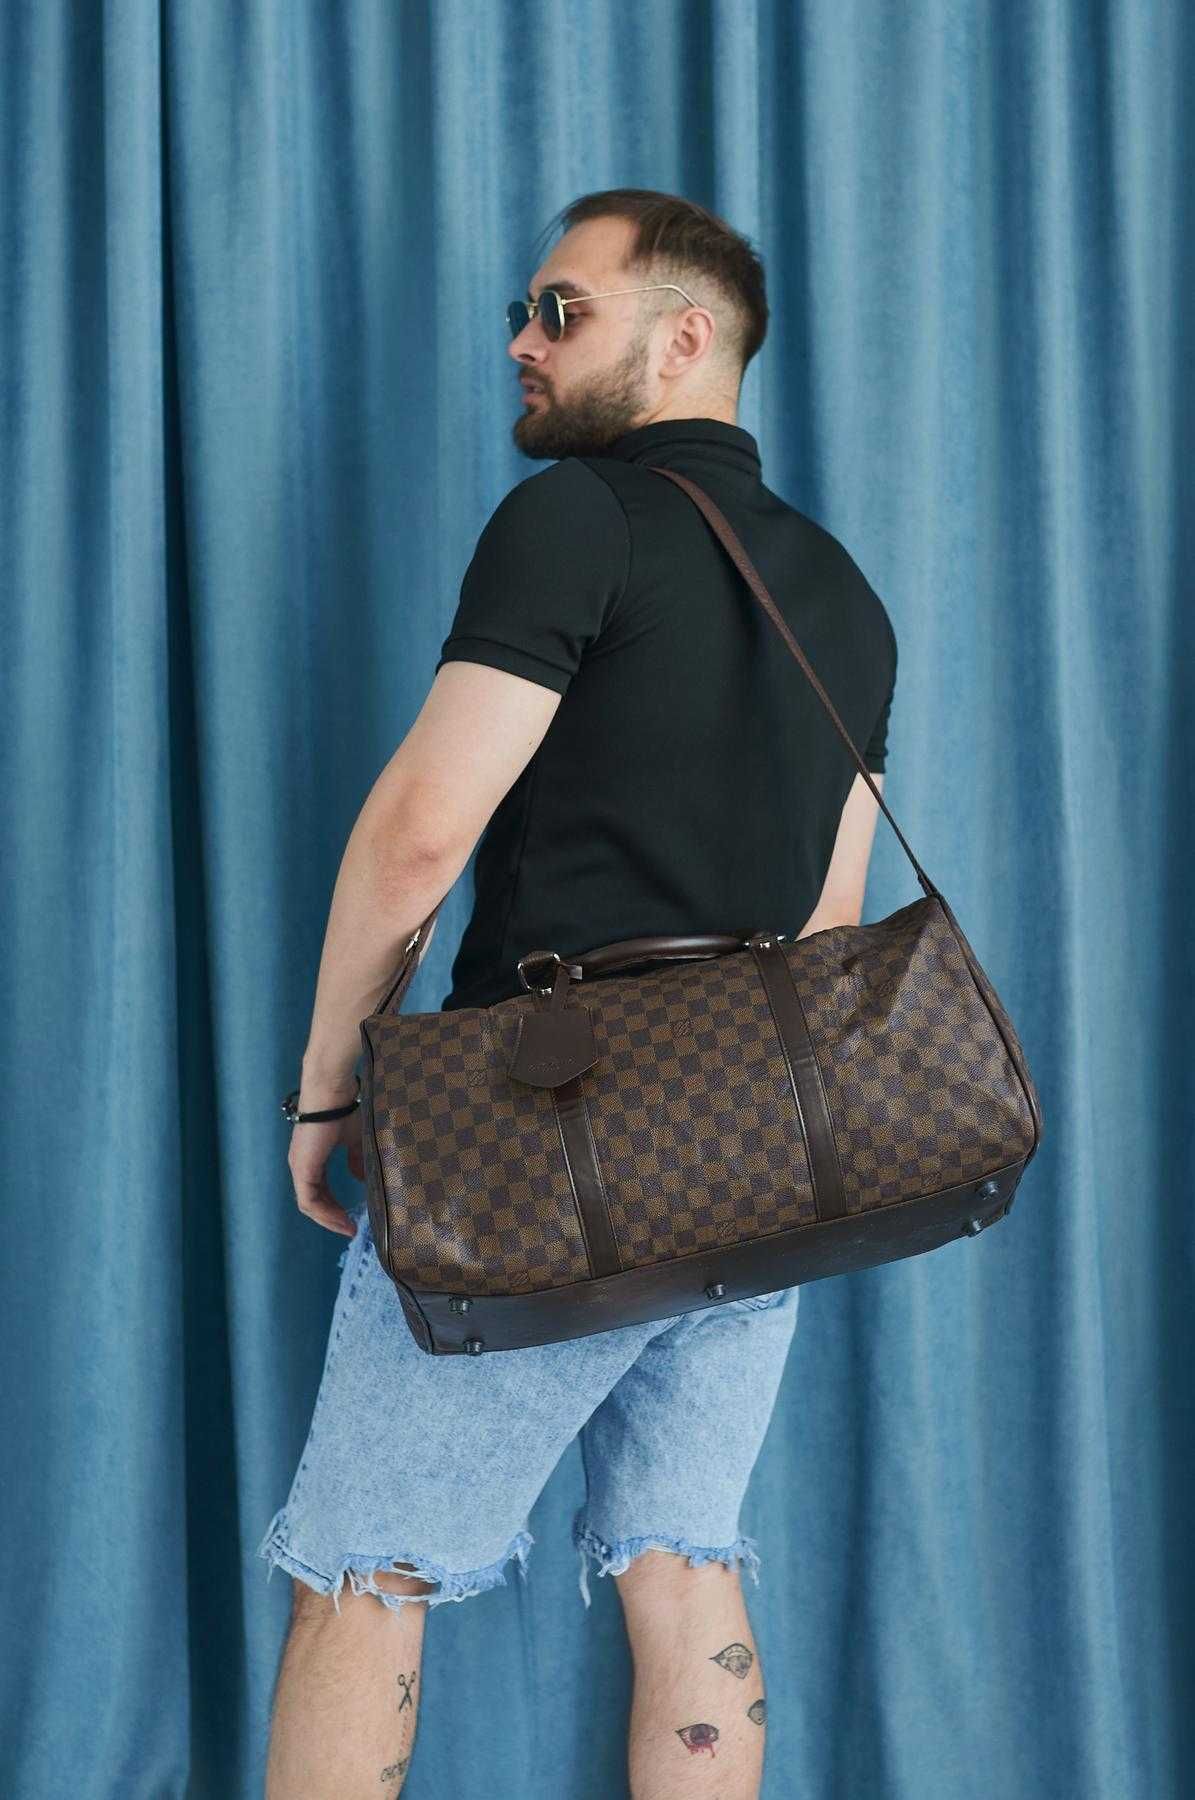 Сумка Louis Vuitton,сумка дорожная,спортивная сумка,сумка для поездок